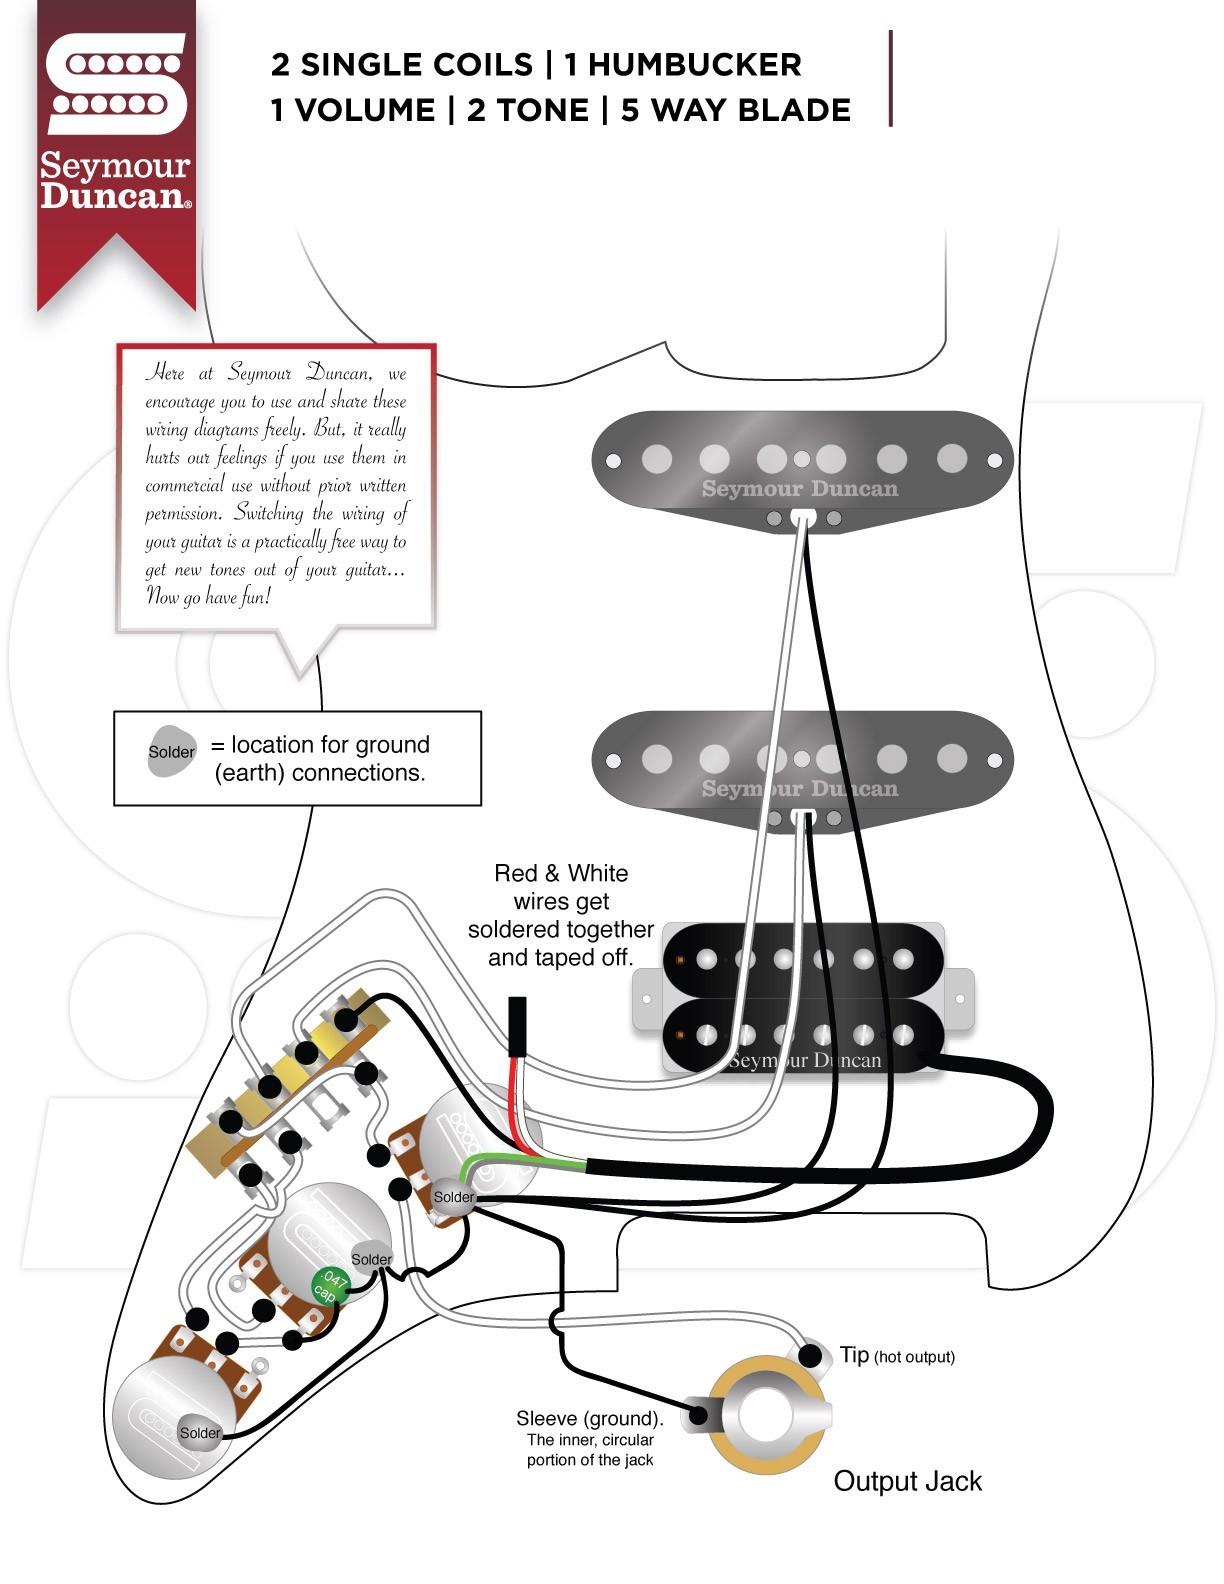 Guitar Wiring Diagrams 2 Pickups Electric Guitar Wiring Diagram E Pickup Fresh Wiring Diagrams Of Guitar Wiring Diagrams 2 Pickups